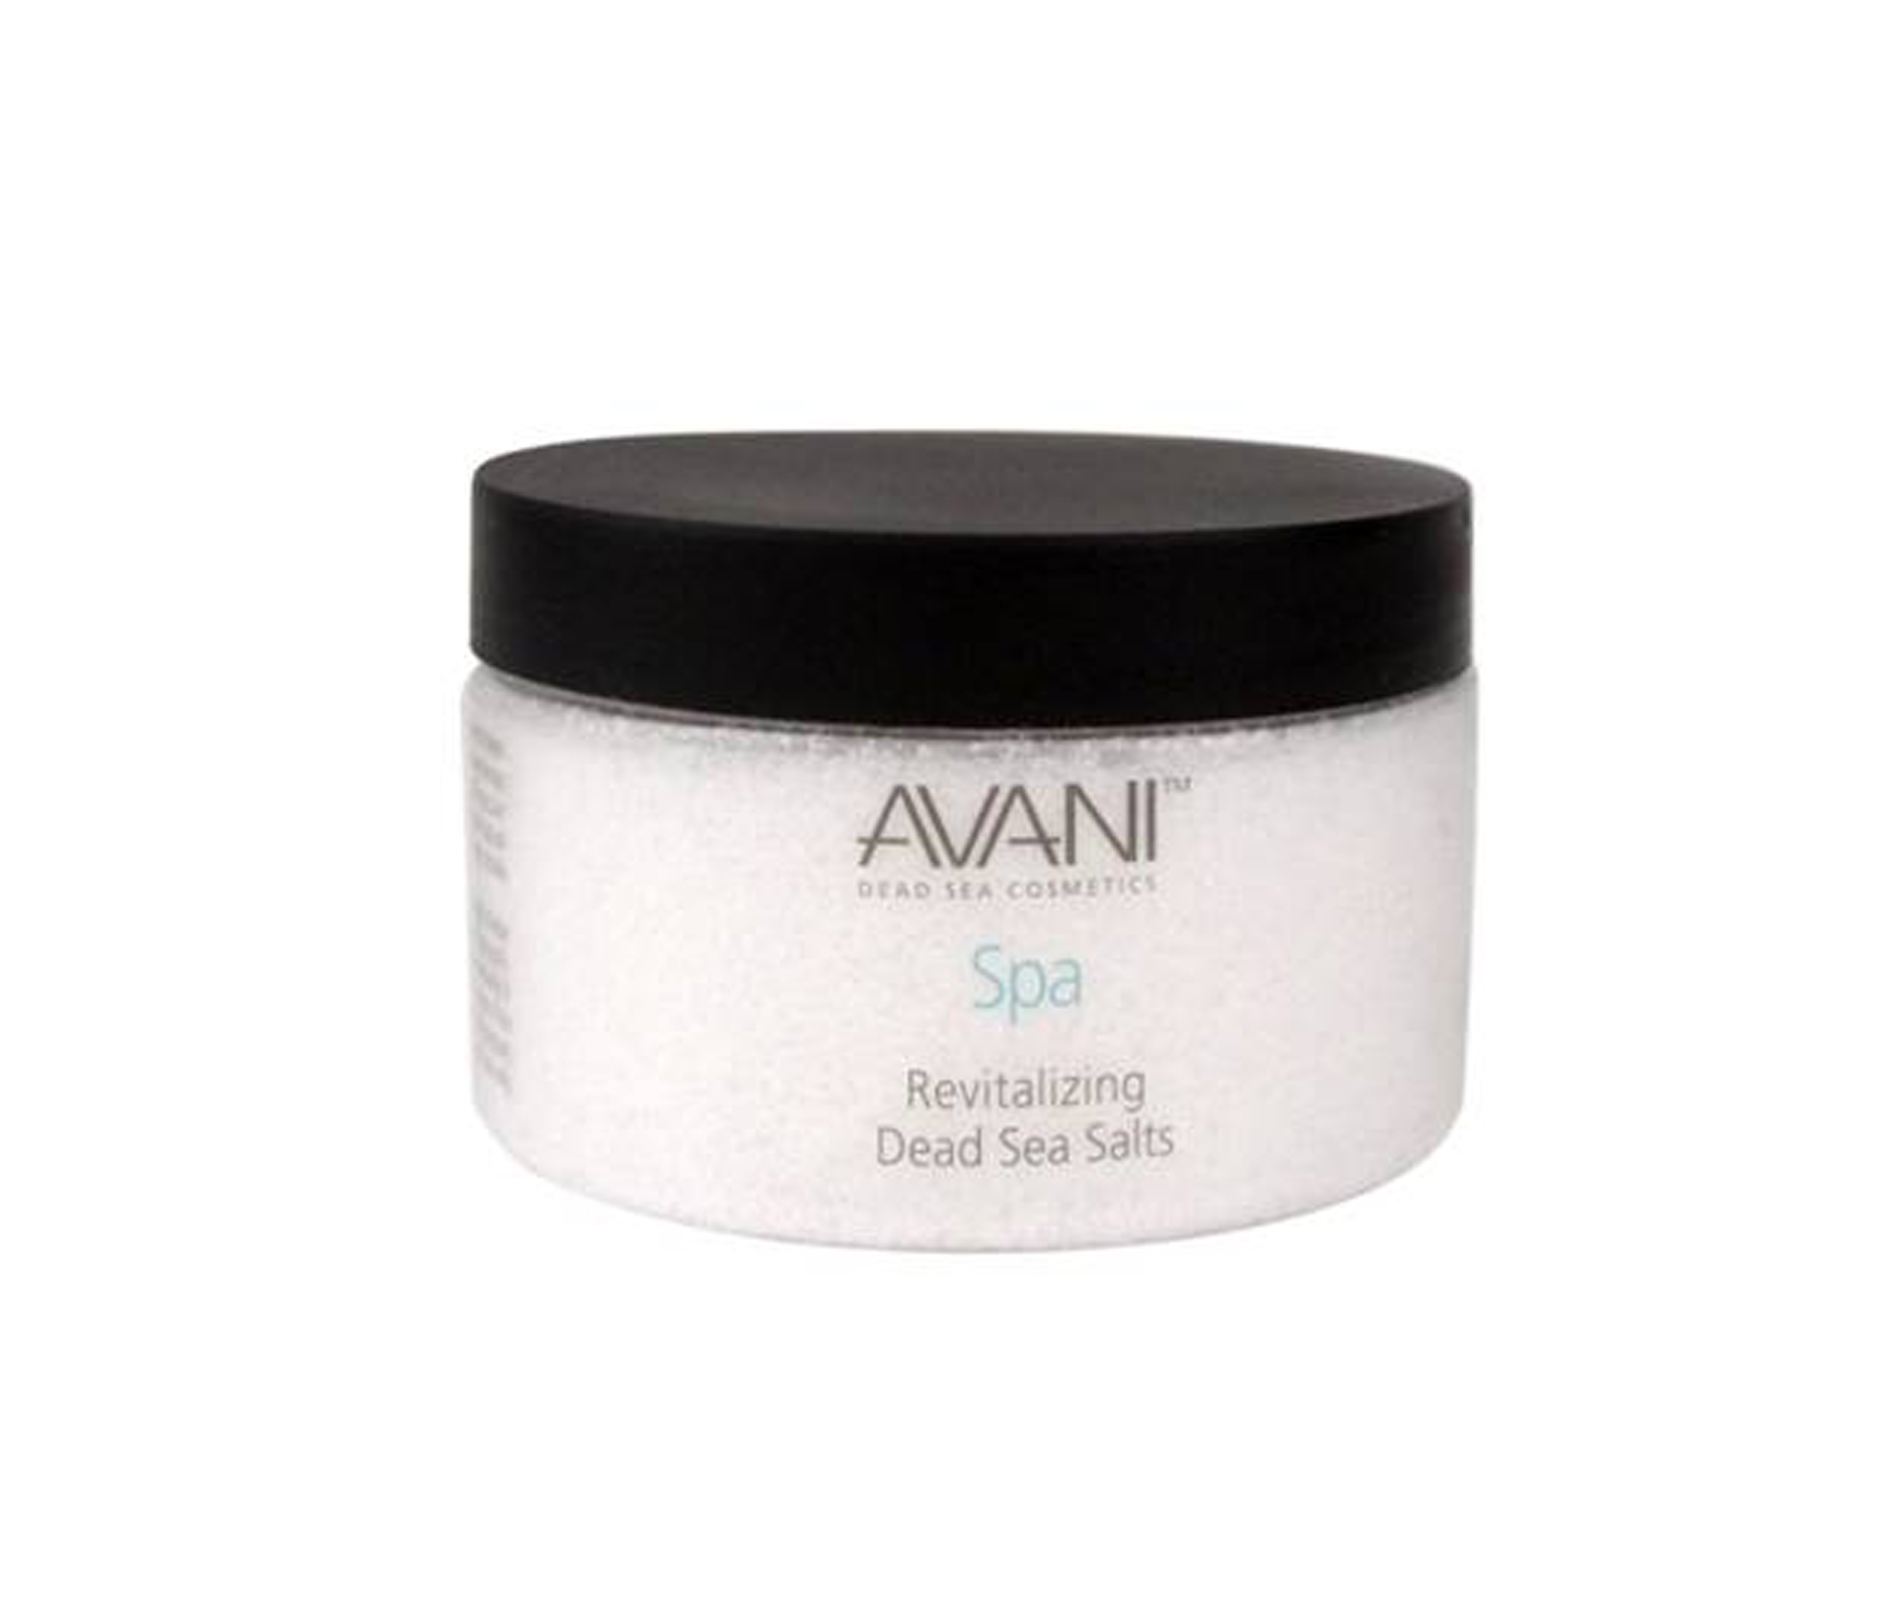 AVANI Supreme Inc. Avani Dead Sea Salts